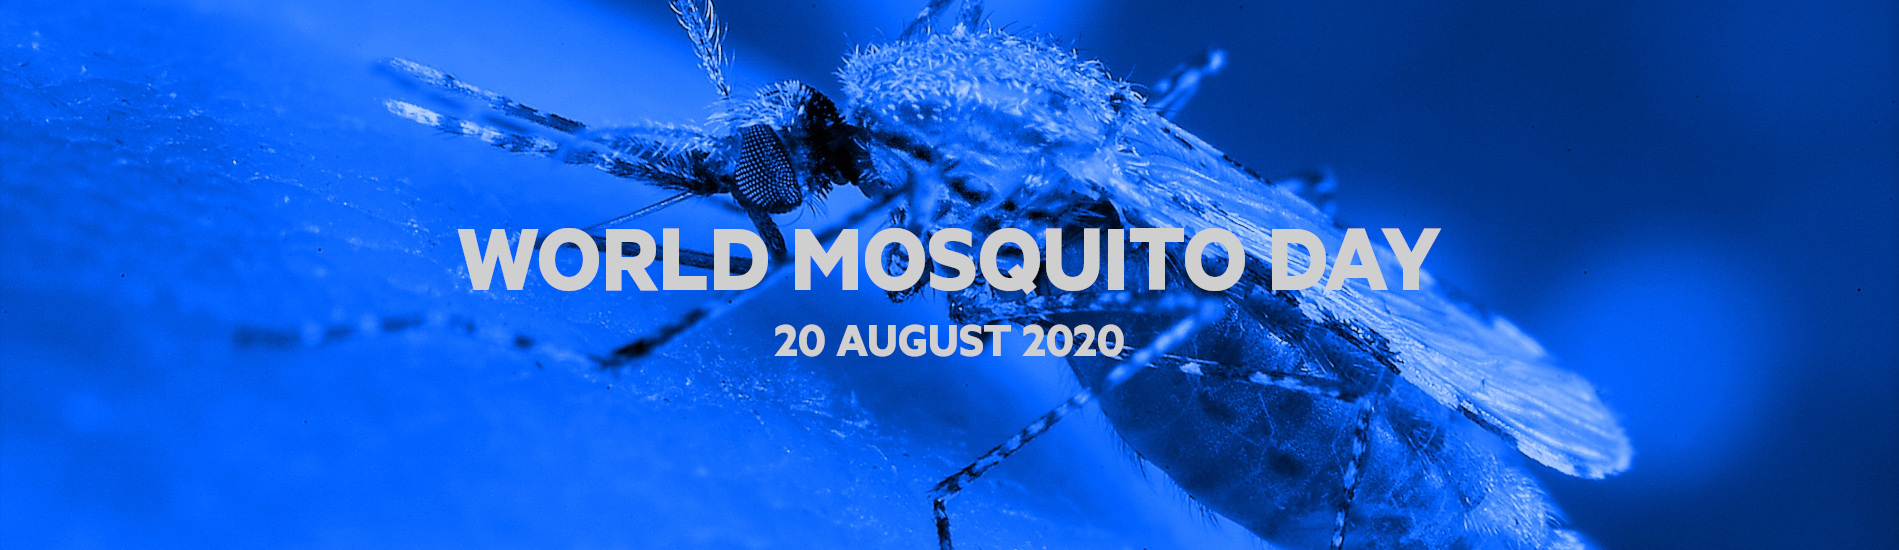 World Mosquito Day 2020